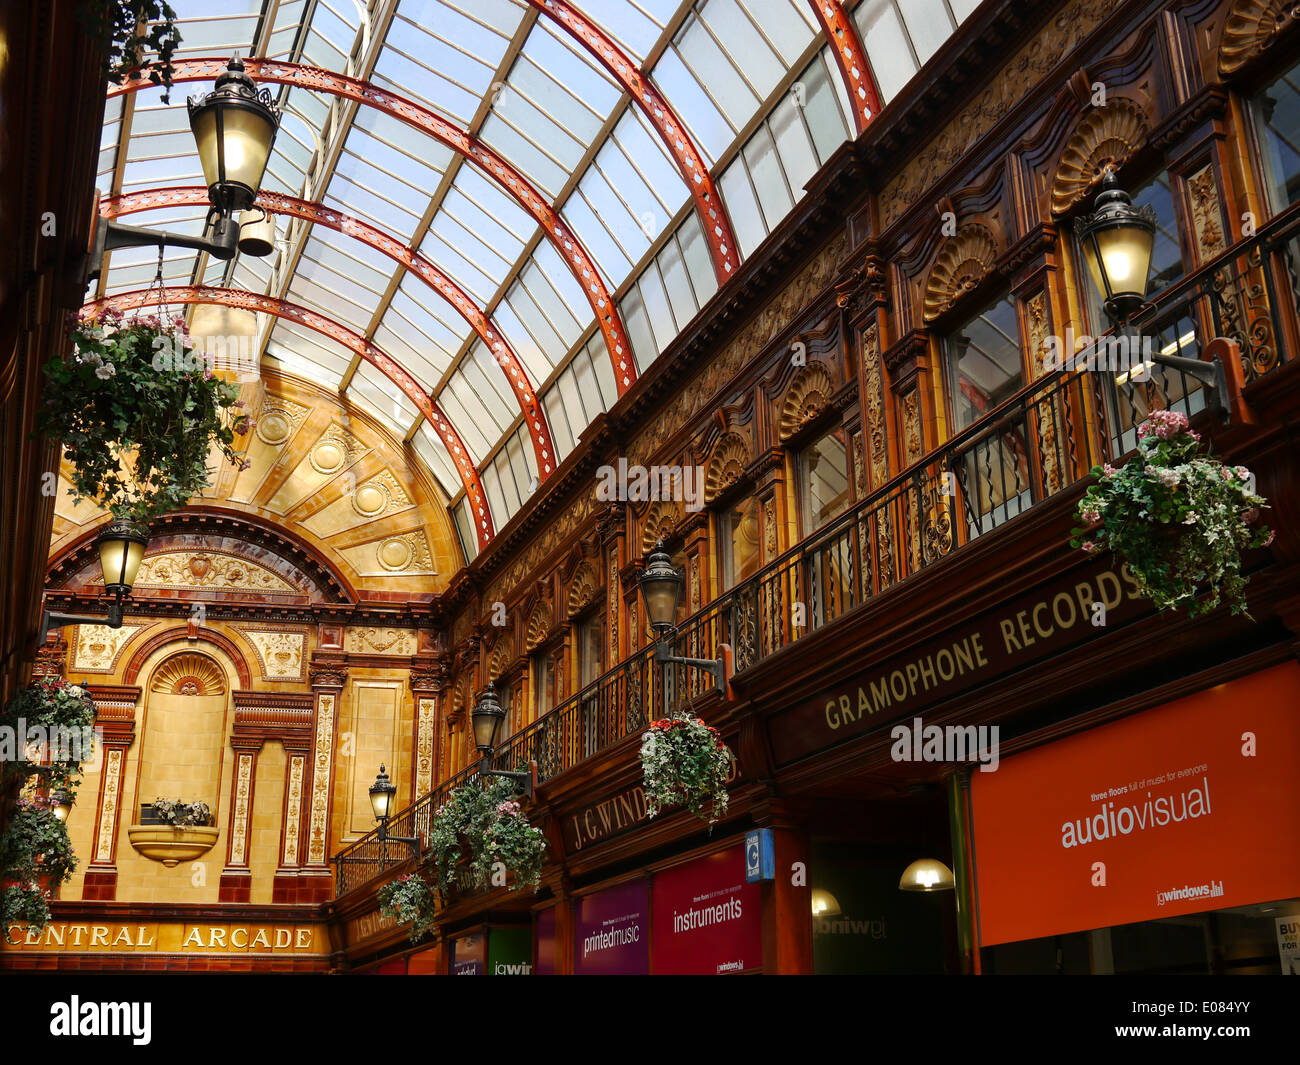 De l'intérieur détail architectural Central ornementé Arcade dans Newcastle Upon Tyne, England, UK Banque D'Images